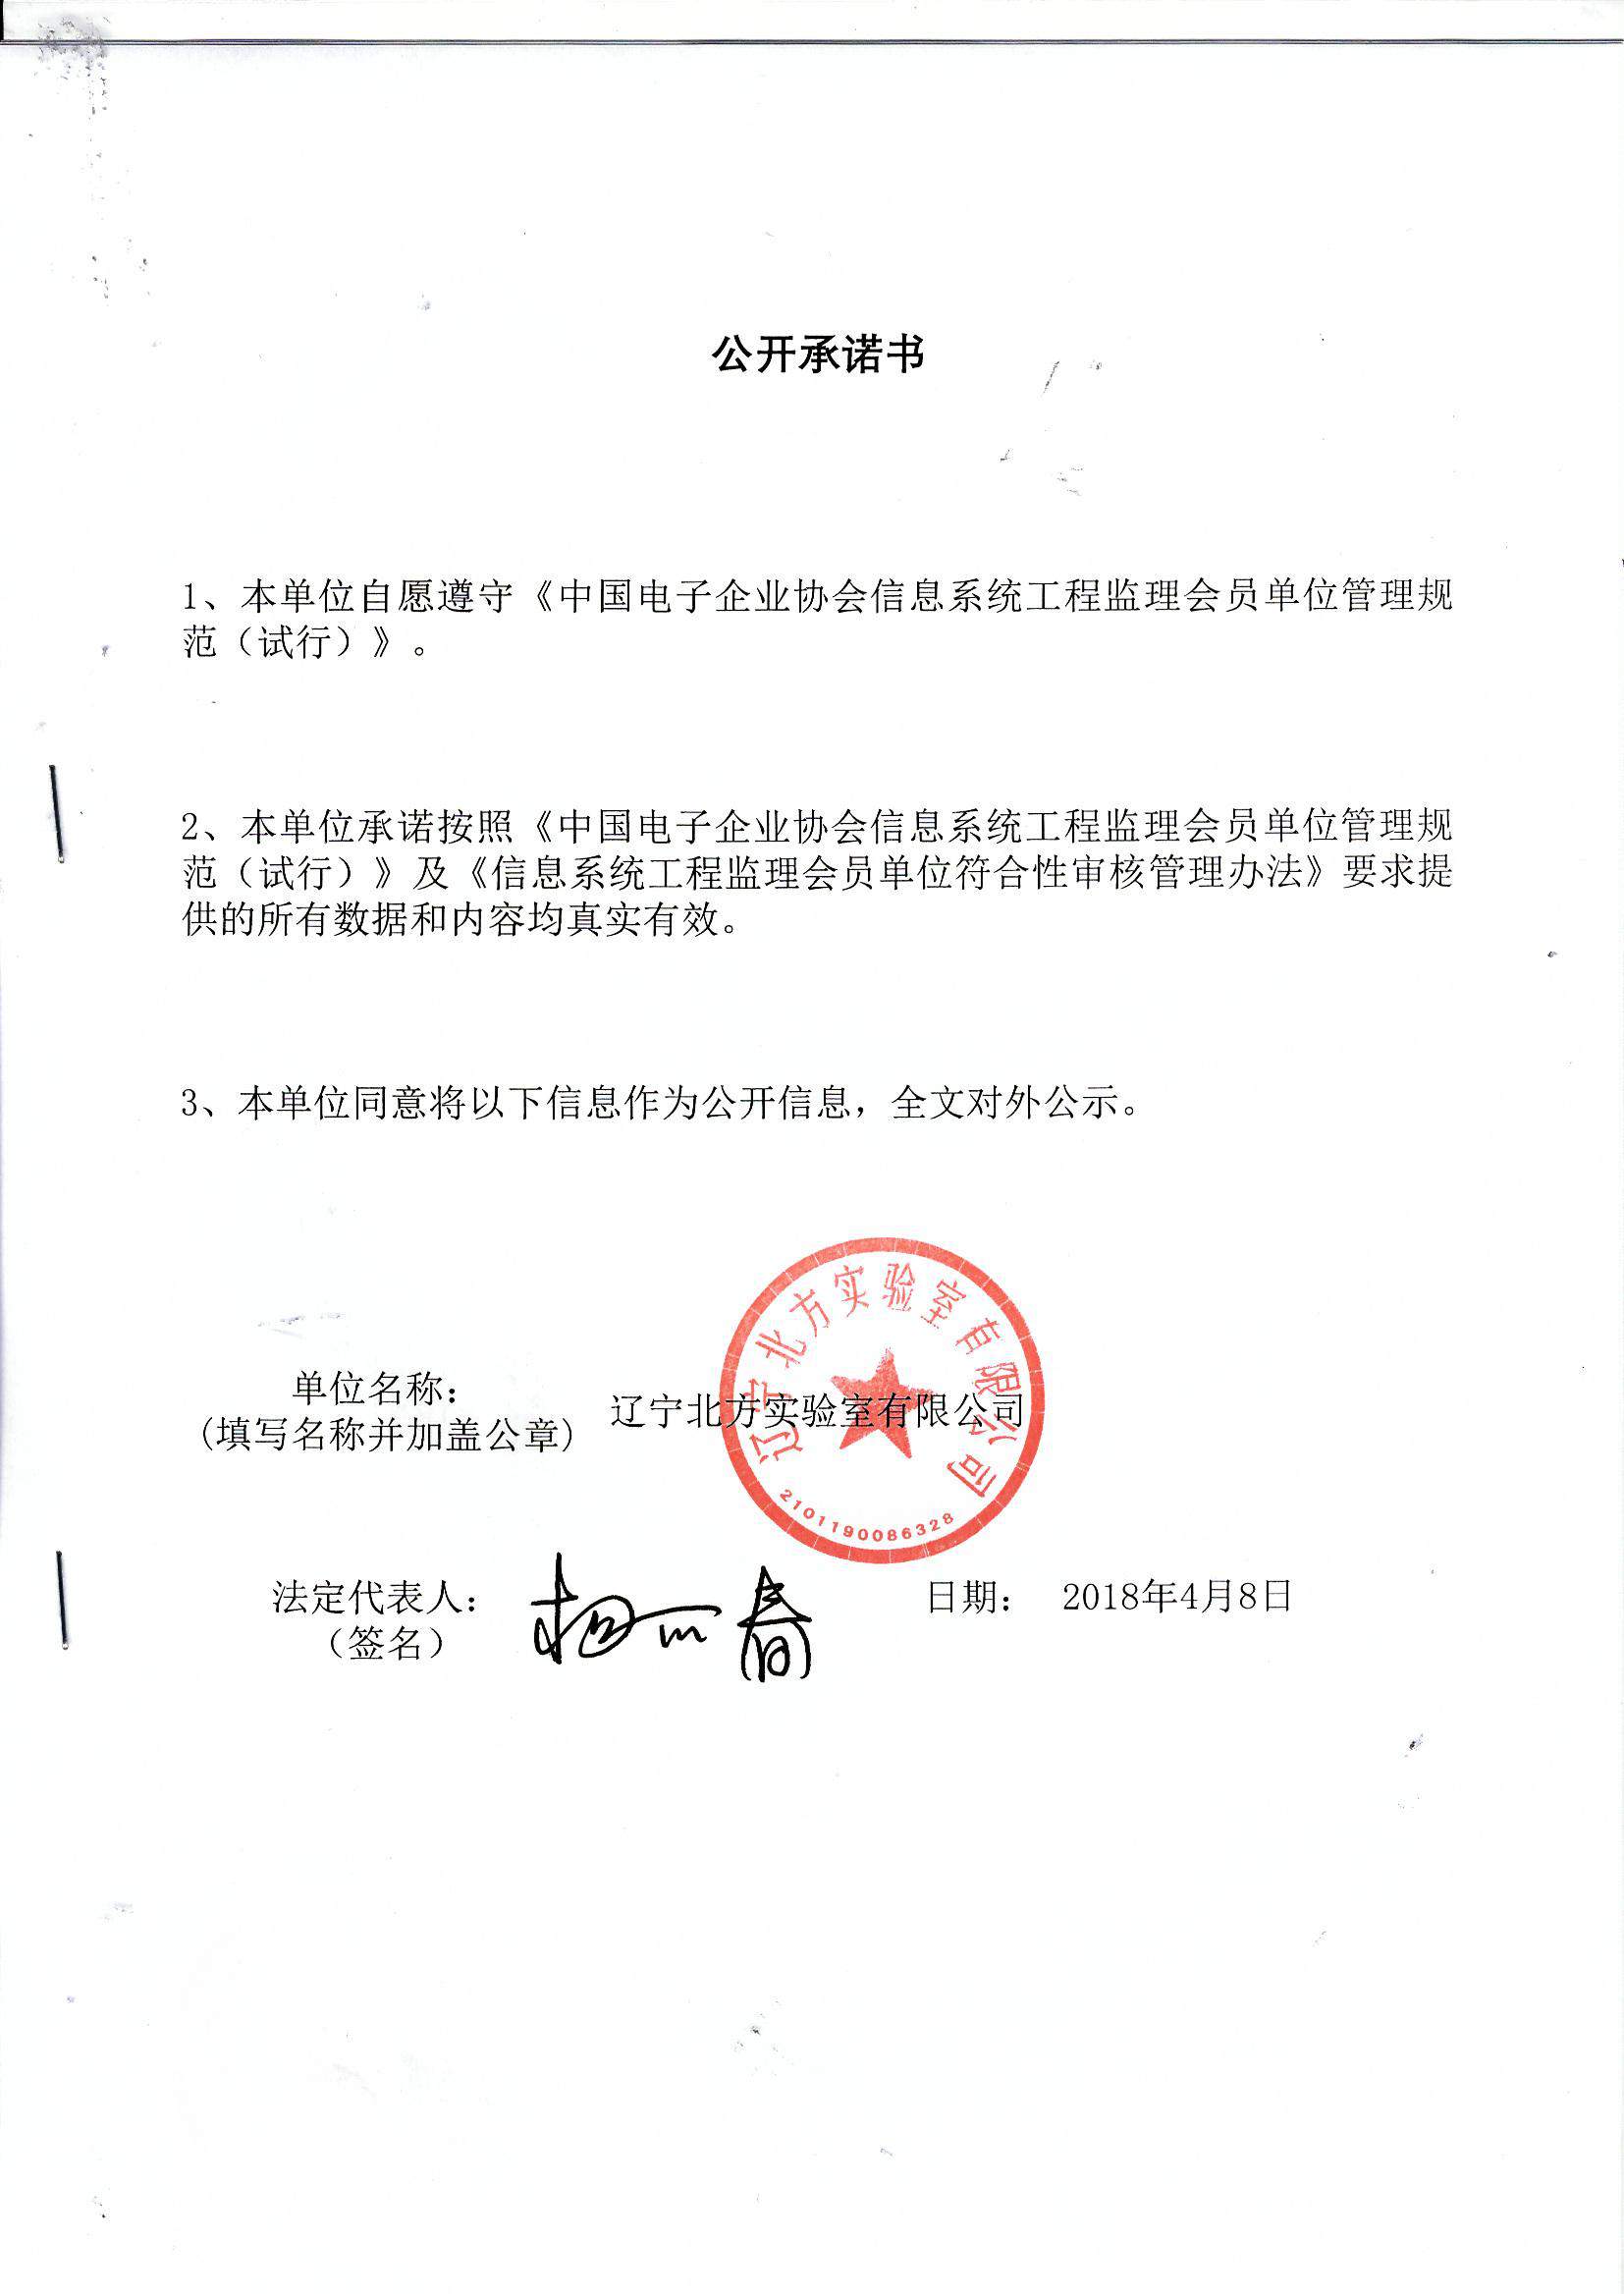 辽宁北方实验室有限公司信息系统工程监理资质证书